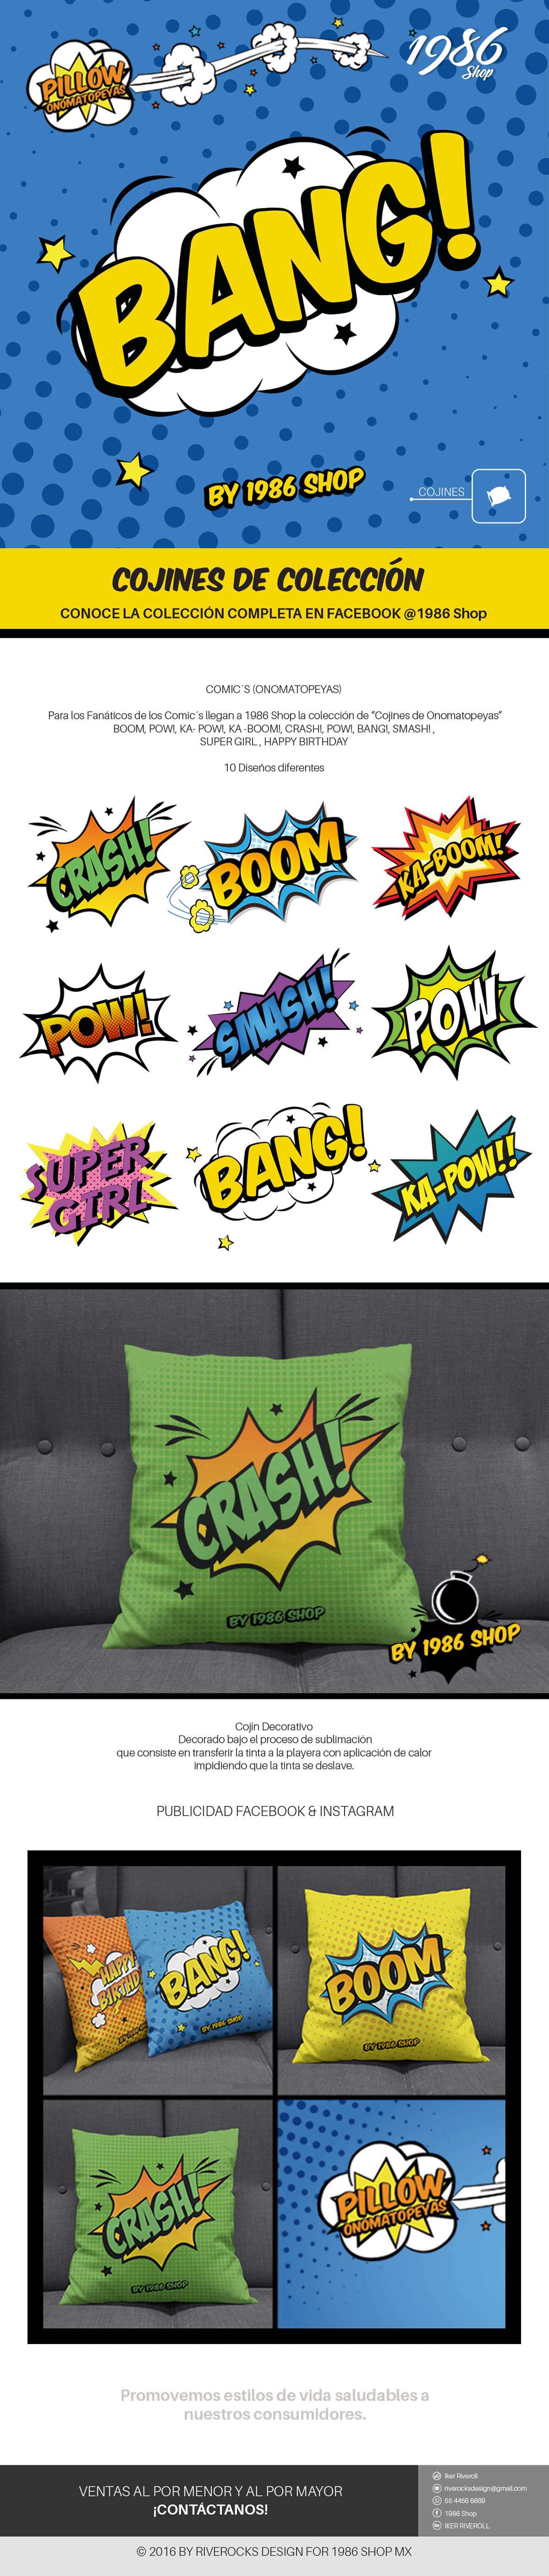 pillow comic´s boom Pow! ka-boom! crash! bang! smash! onomatopeyas